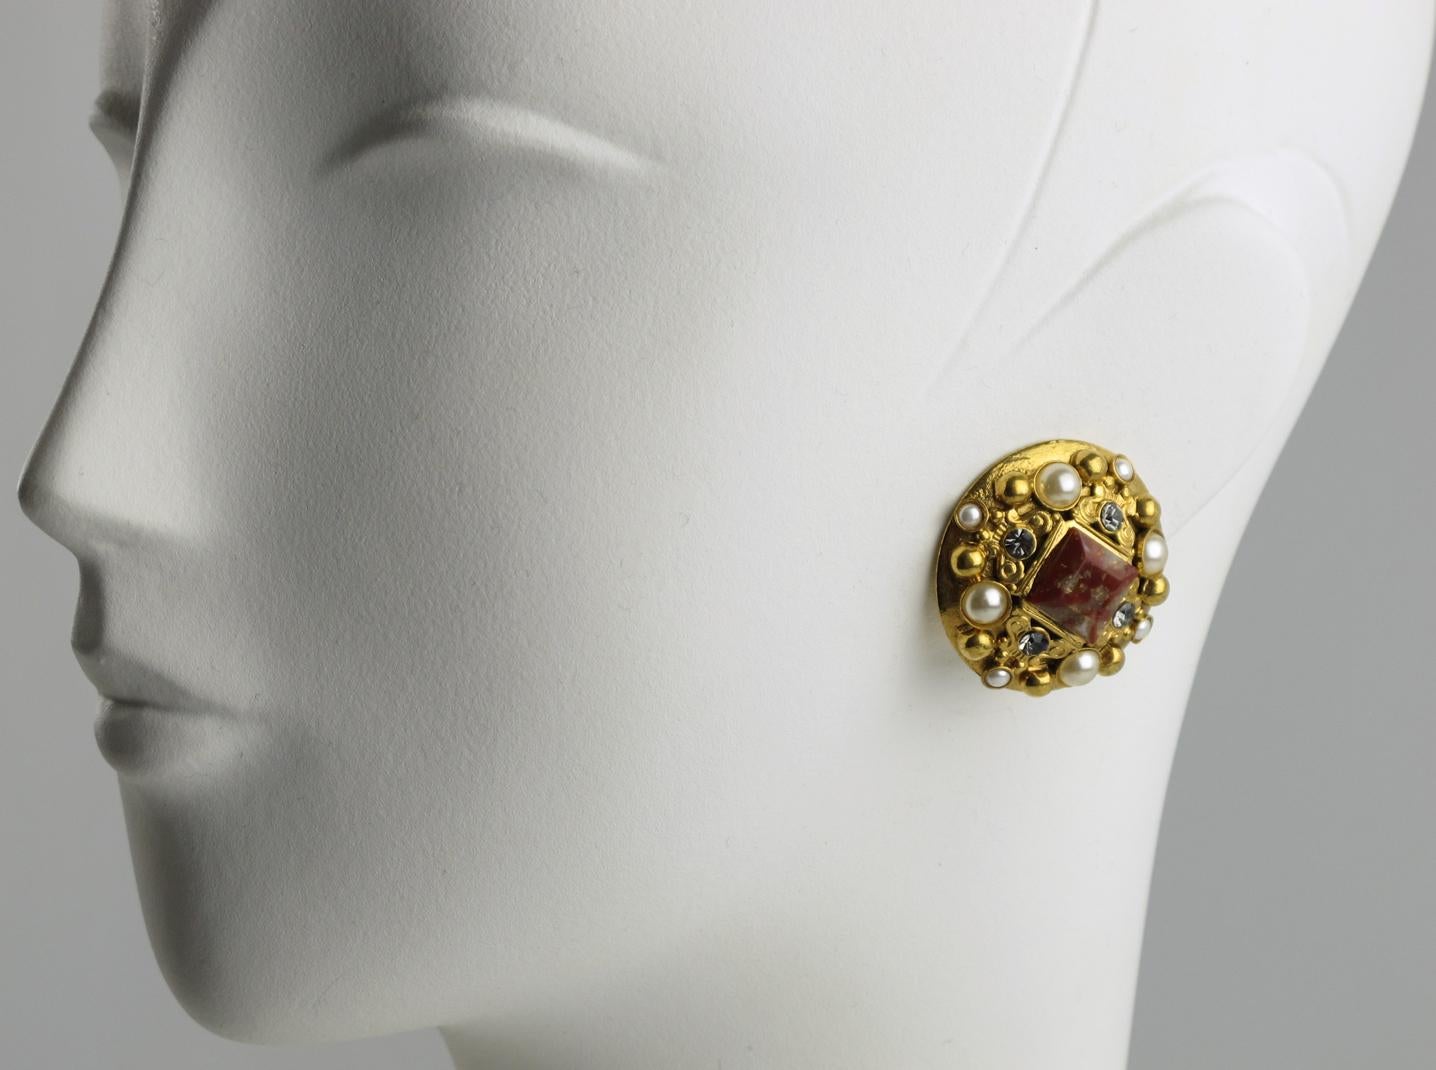 Boucles d'oreilles à clip signées du créateur de bijoux français Henry Perichon (alias Henry). Forme arrondie en métal doré d'inspiration baroque ornée de pierres précieuses bordeaux carrées en forme de perles et de strass transparents en forme de